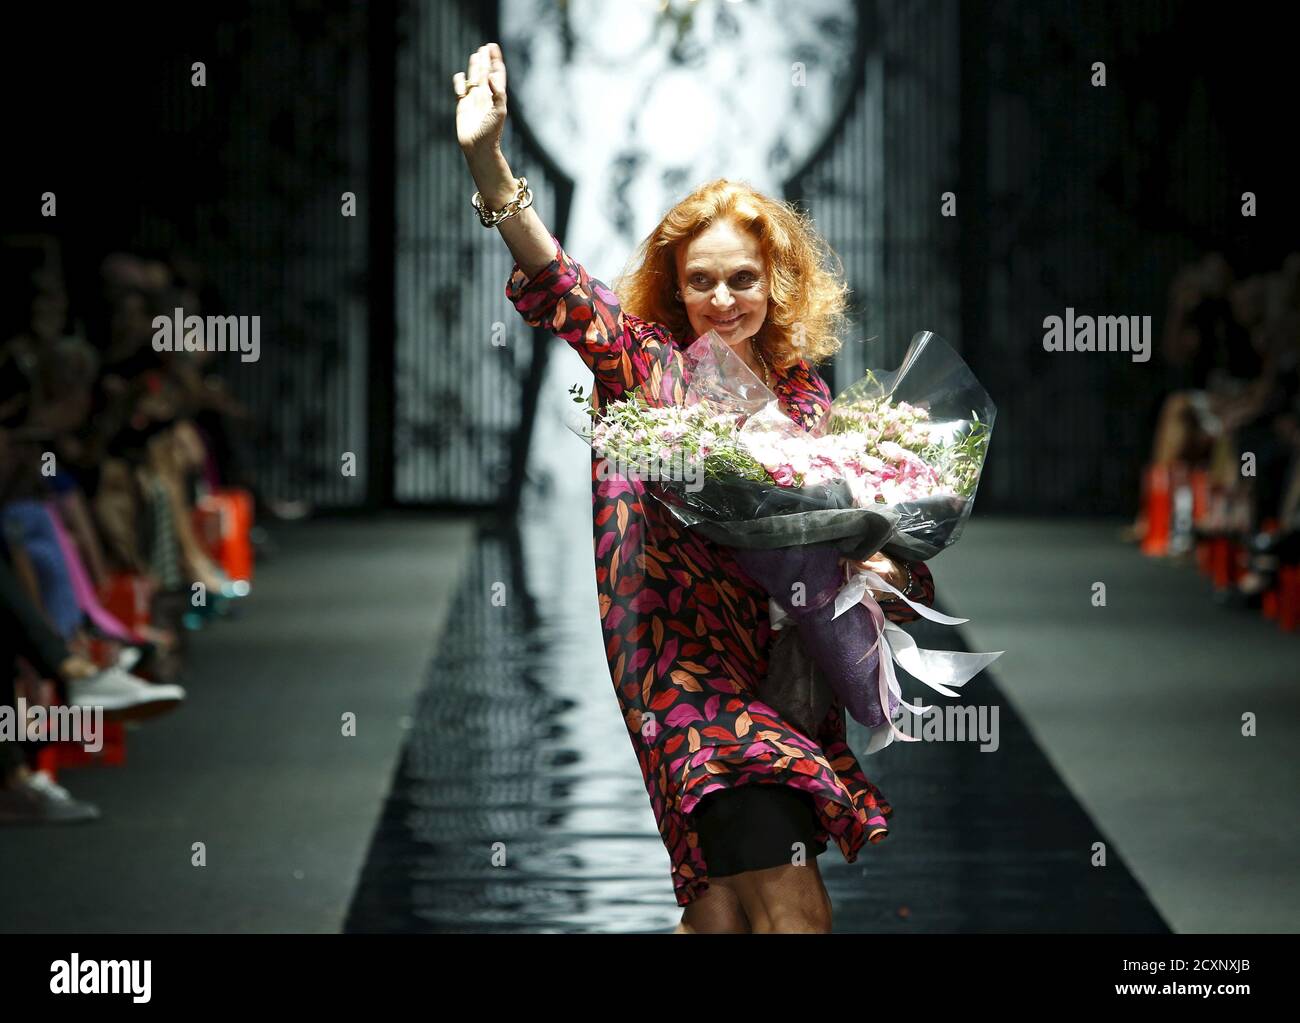 Designerin Diane von Furstenberg winkt am Ende ihrer Herbst 2015 Kollektion 'Seduction' Show auf der Singapore Fashion Week 13. Mai 2015 dem Publikum zu. Die neunte Ausgabe der Singapore Fashion Week findet vom 13. Bis 17. Mai statt. REUTERS/Edgar Su Stockfoto